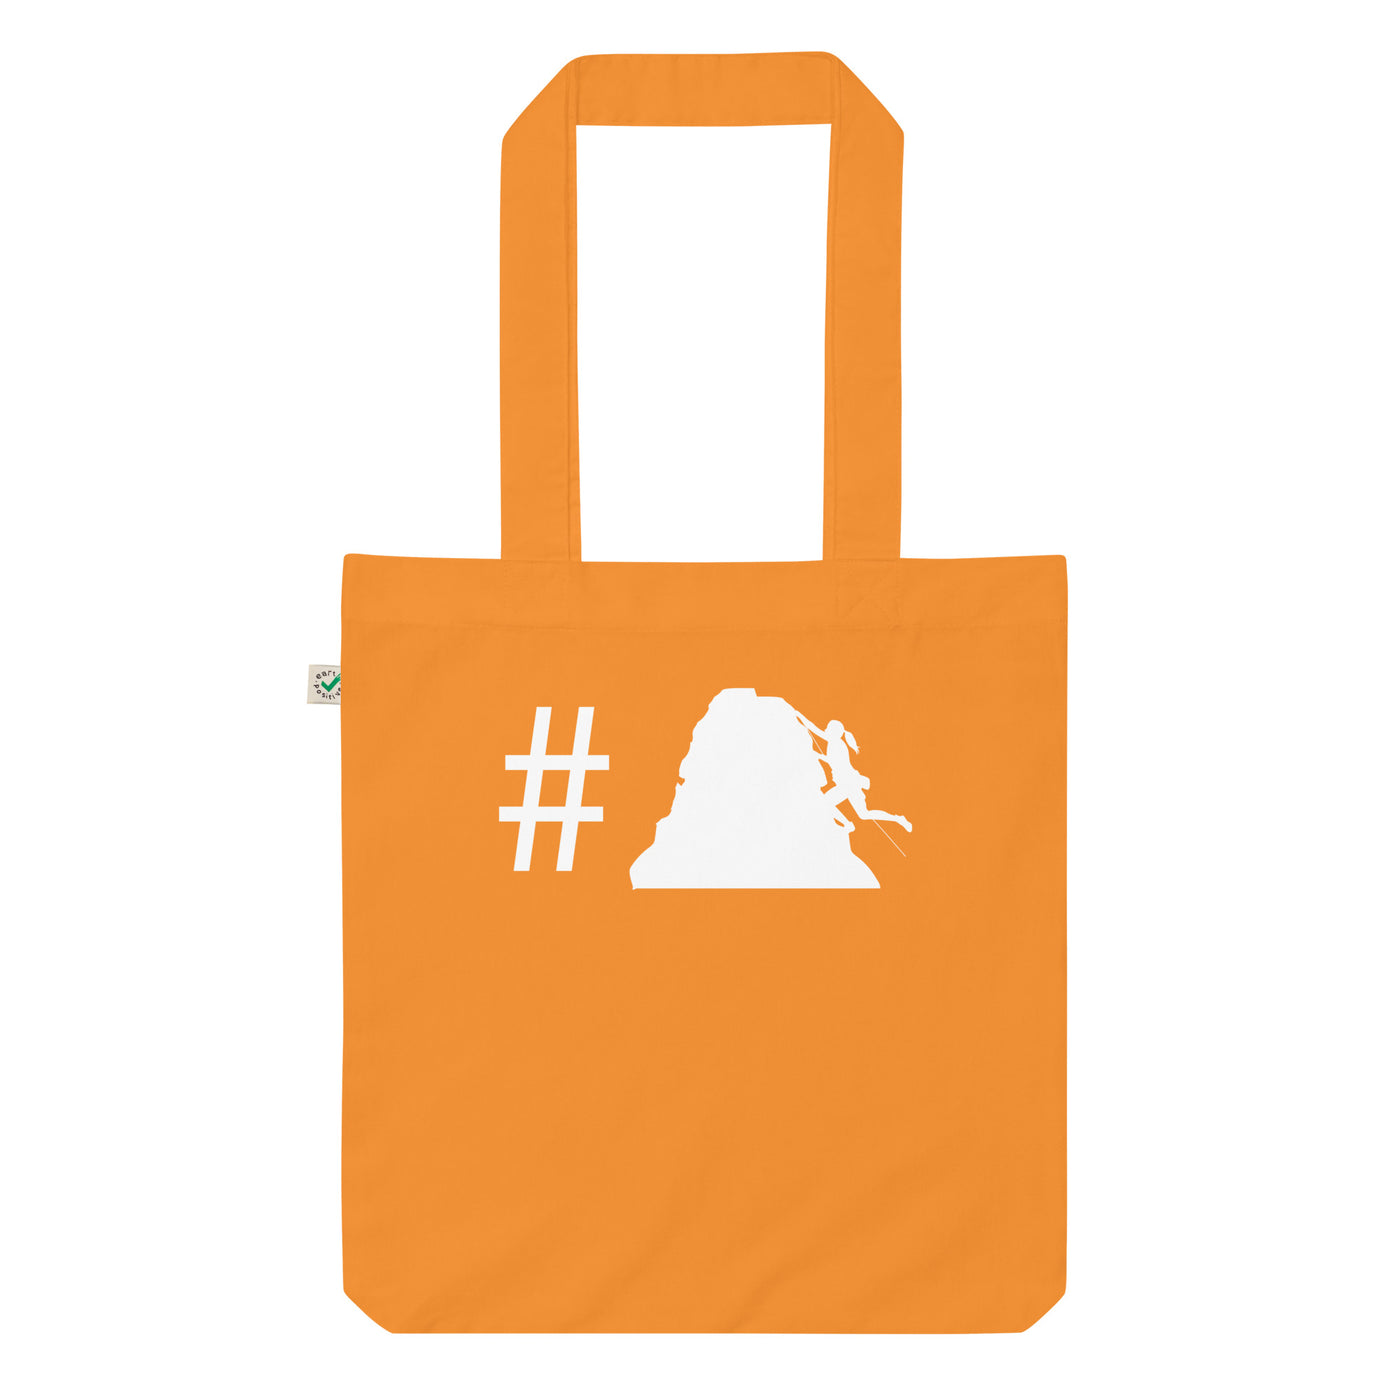 Hashtag - Klettern Für Frauen - Organic Einkaufstasche klettern Cinnamon